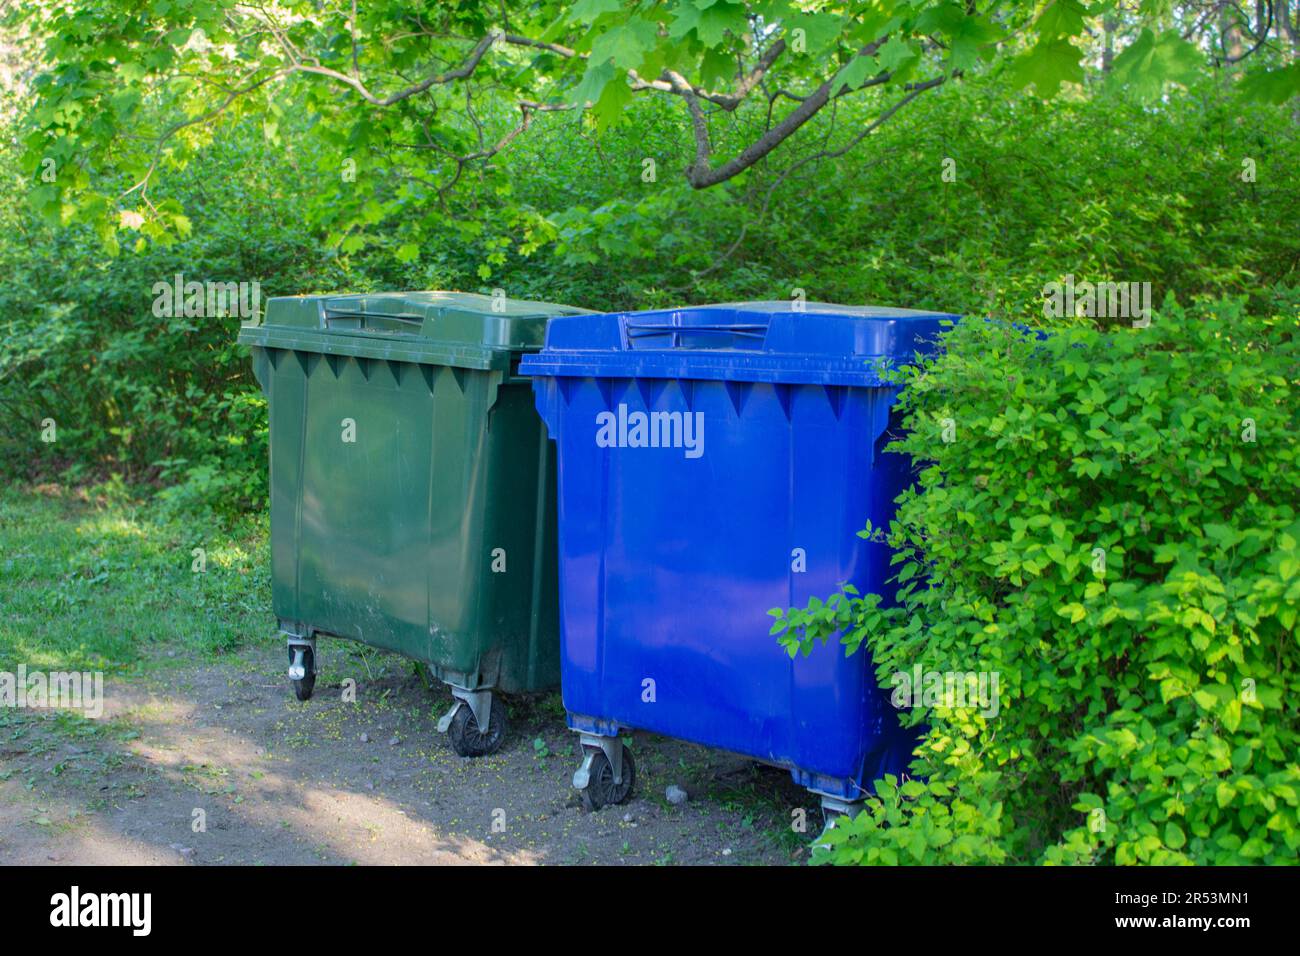 Deux poubelles en plastique. Les conteneurs sont situés dans le parc de la ville. Tri séparé des déchets. Attitude responsable envers l'environnement. Zéro wa Banque D'Images